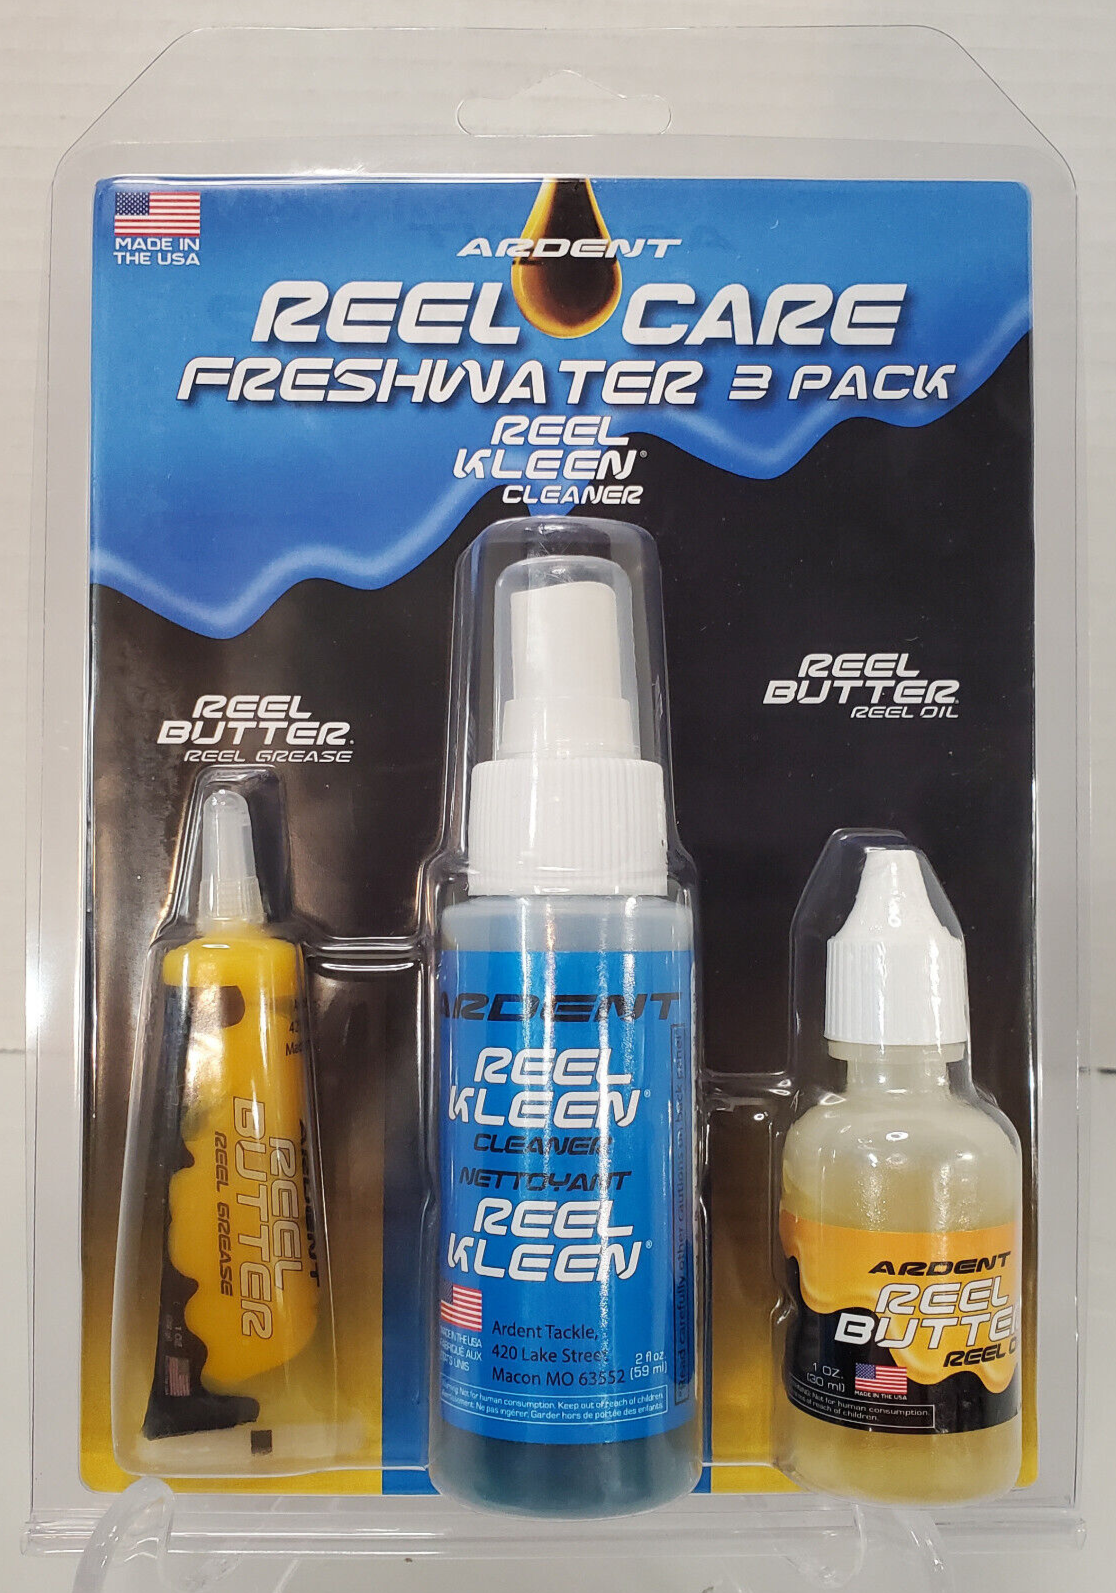 Ardent Reel Care Freshwater 3 Pack Reel Butter & Reel Cleaner Kit